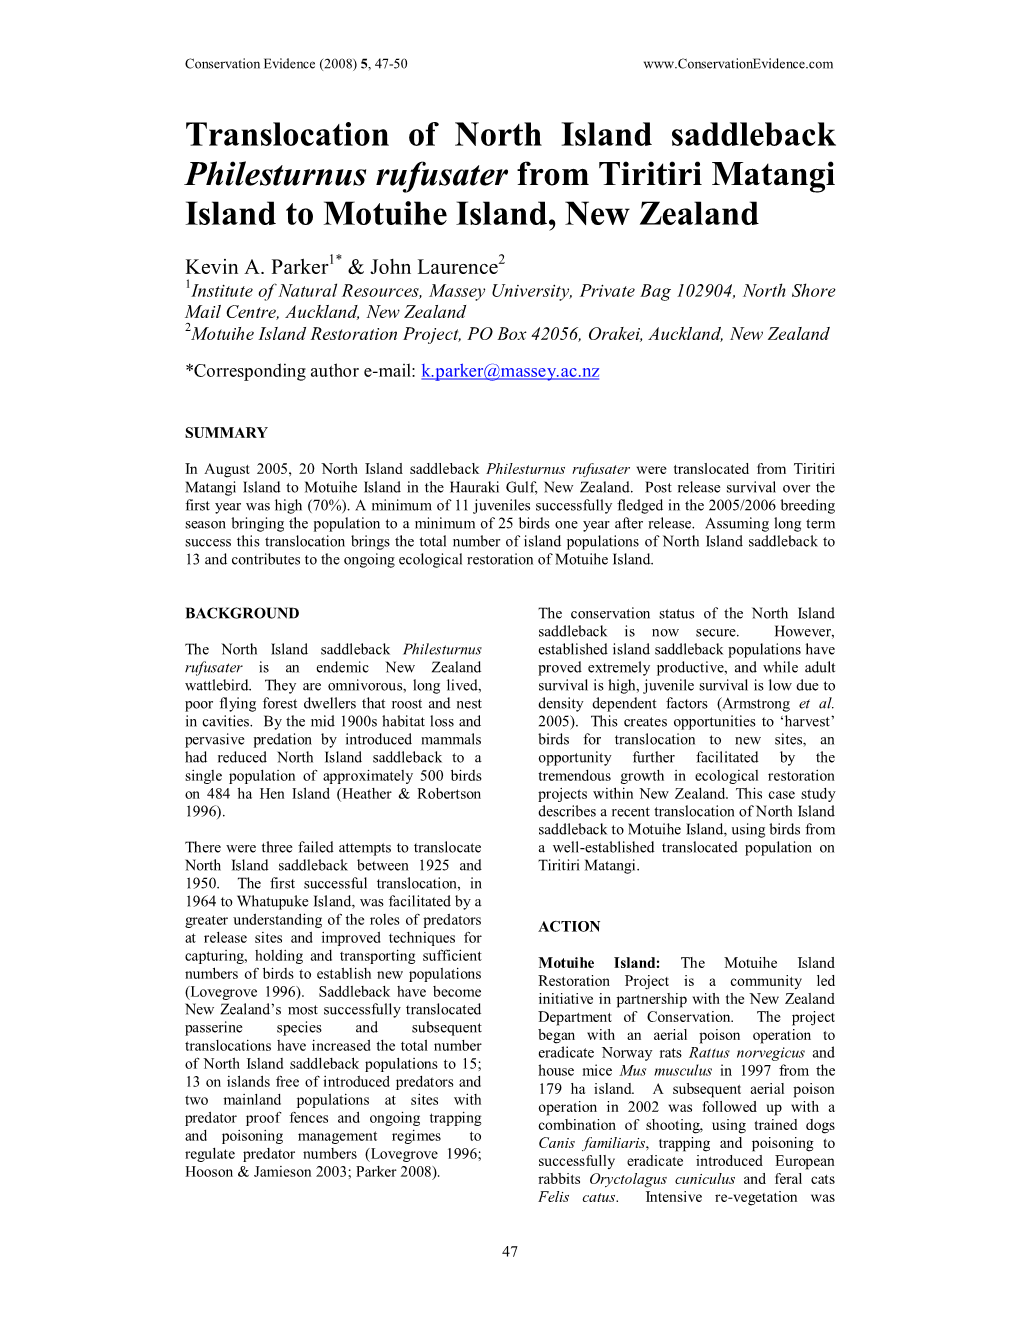 Translocation of North Island Saddleback Philesturnus Rufusater from Tiritiri Matangi Island to Motuihe Island, New Zealand